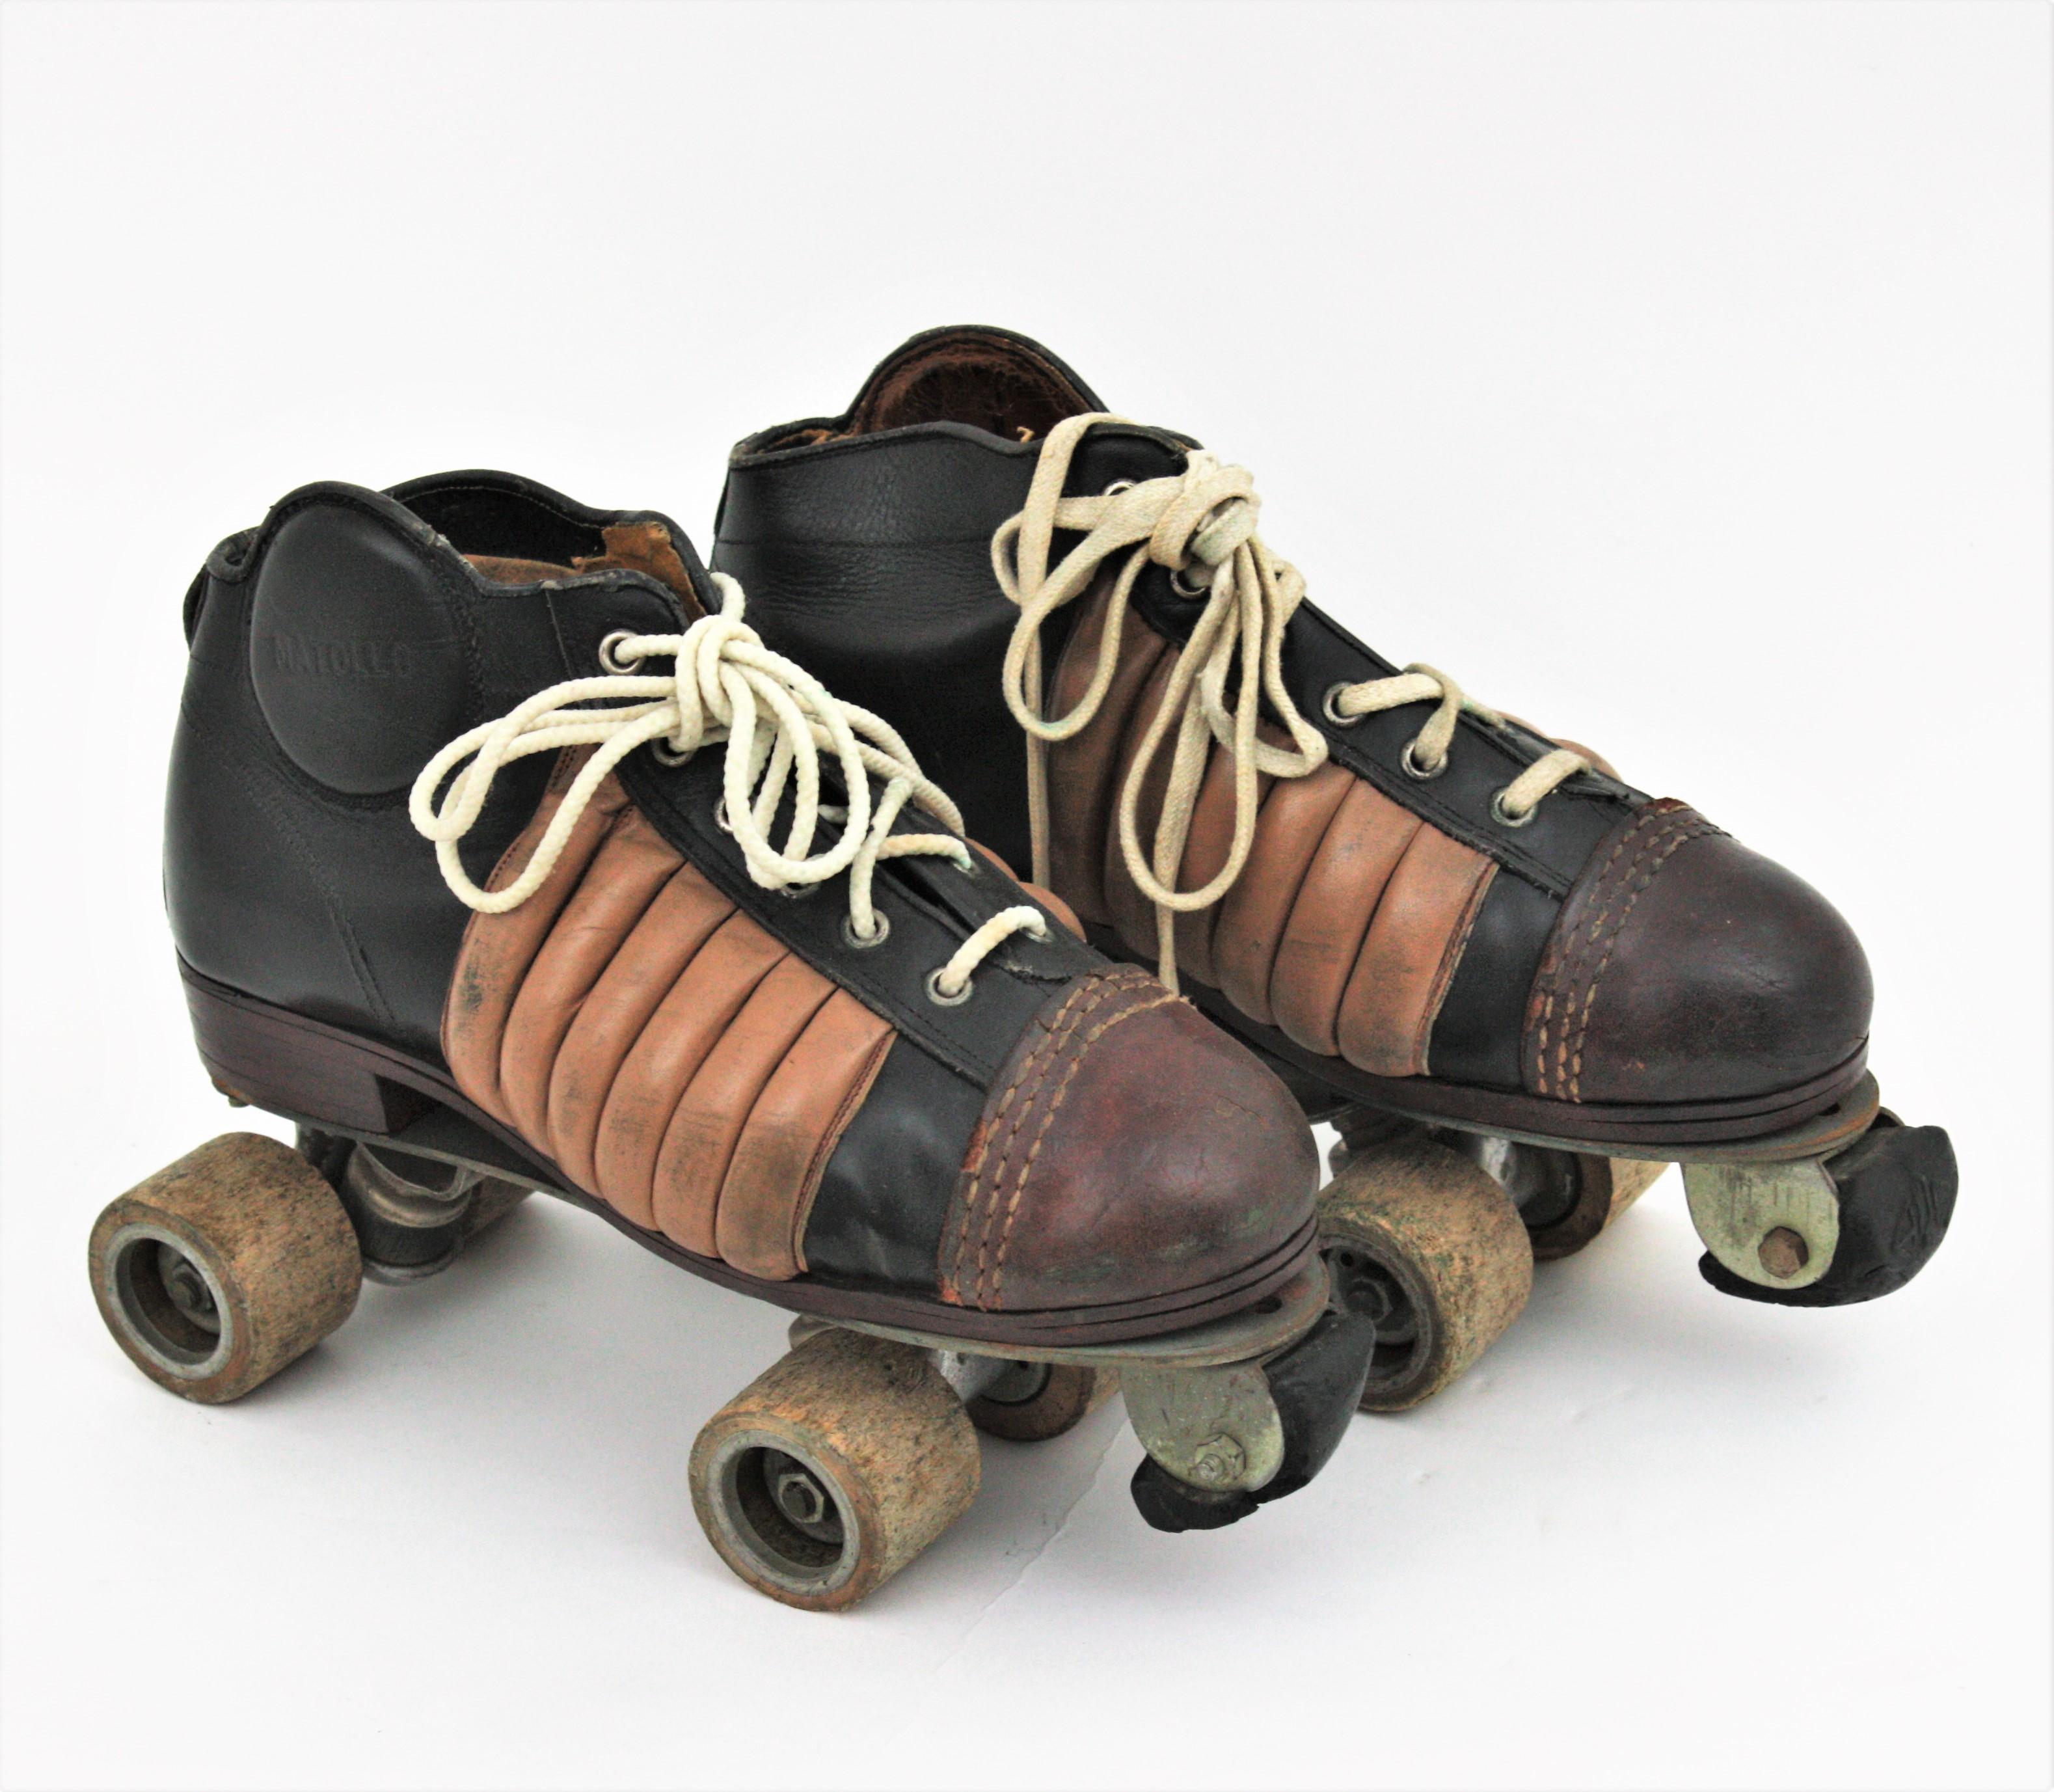 Vintage Hockey Rollschuhe in schwarzem und braunem Leder. Hergestellt von Matollo, Spanien, 1950er-1960.
Die Stiefel sind aus Leder auf einem Metallsockel mit Holzrädern gefertigt.
Für Sport- und Kuriositätensammler, zu dekorativen Zwecken oder